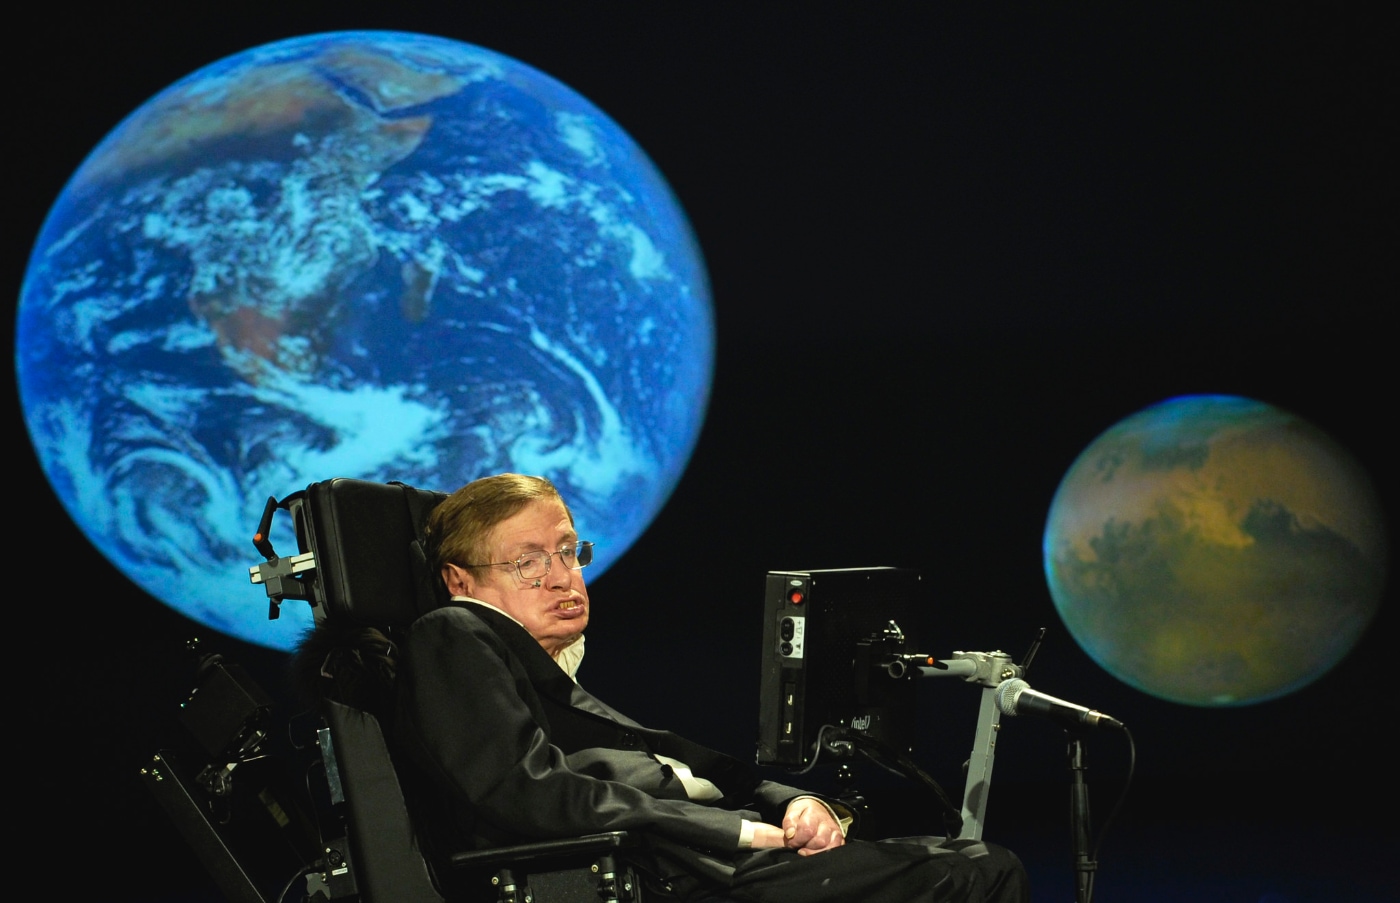 El fisico, durante una conferencia en Washington con motivo del cincuentenario de la NASA. Foto: AFP.